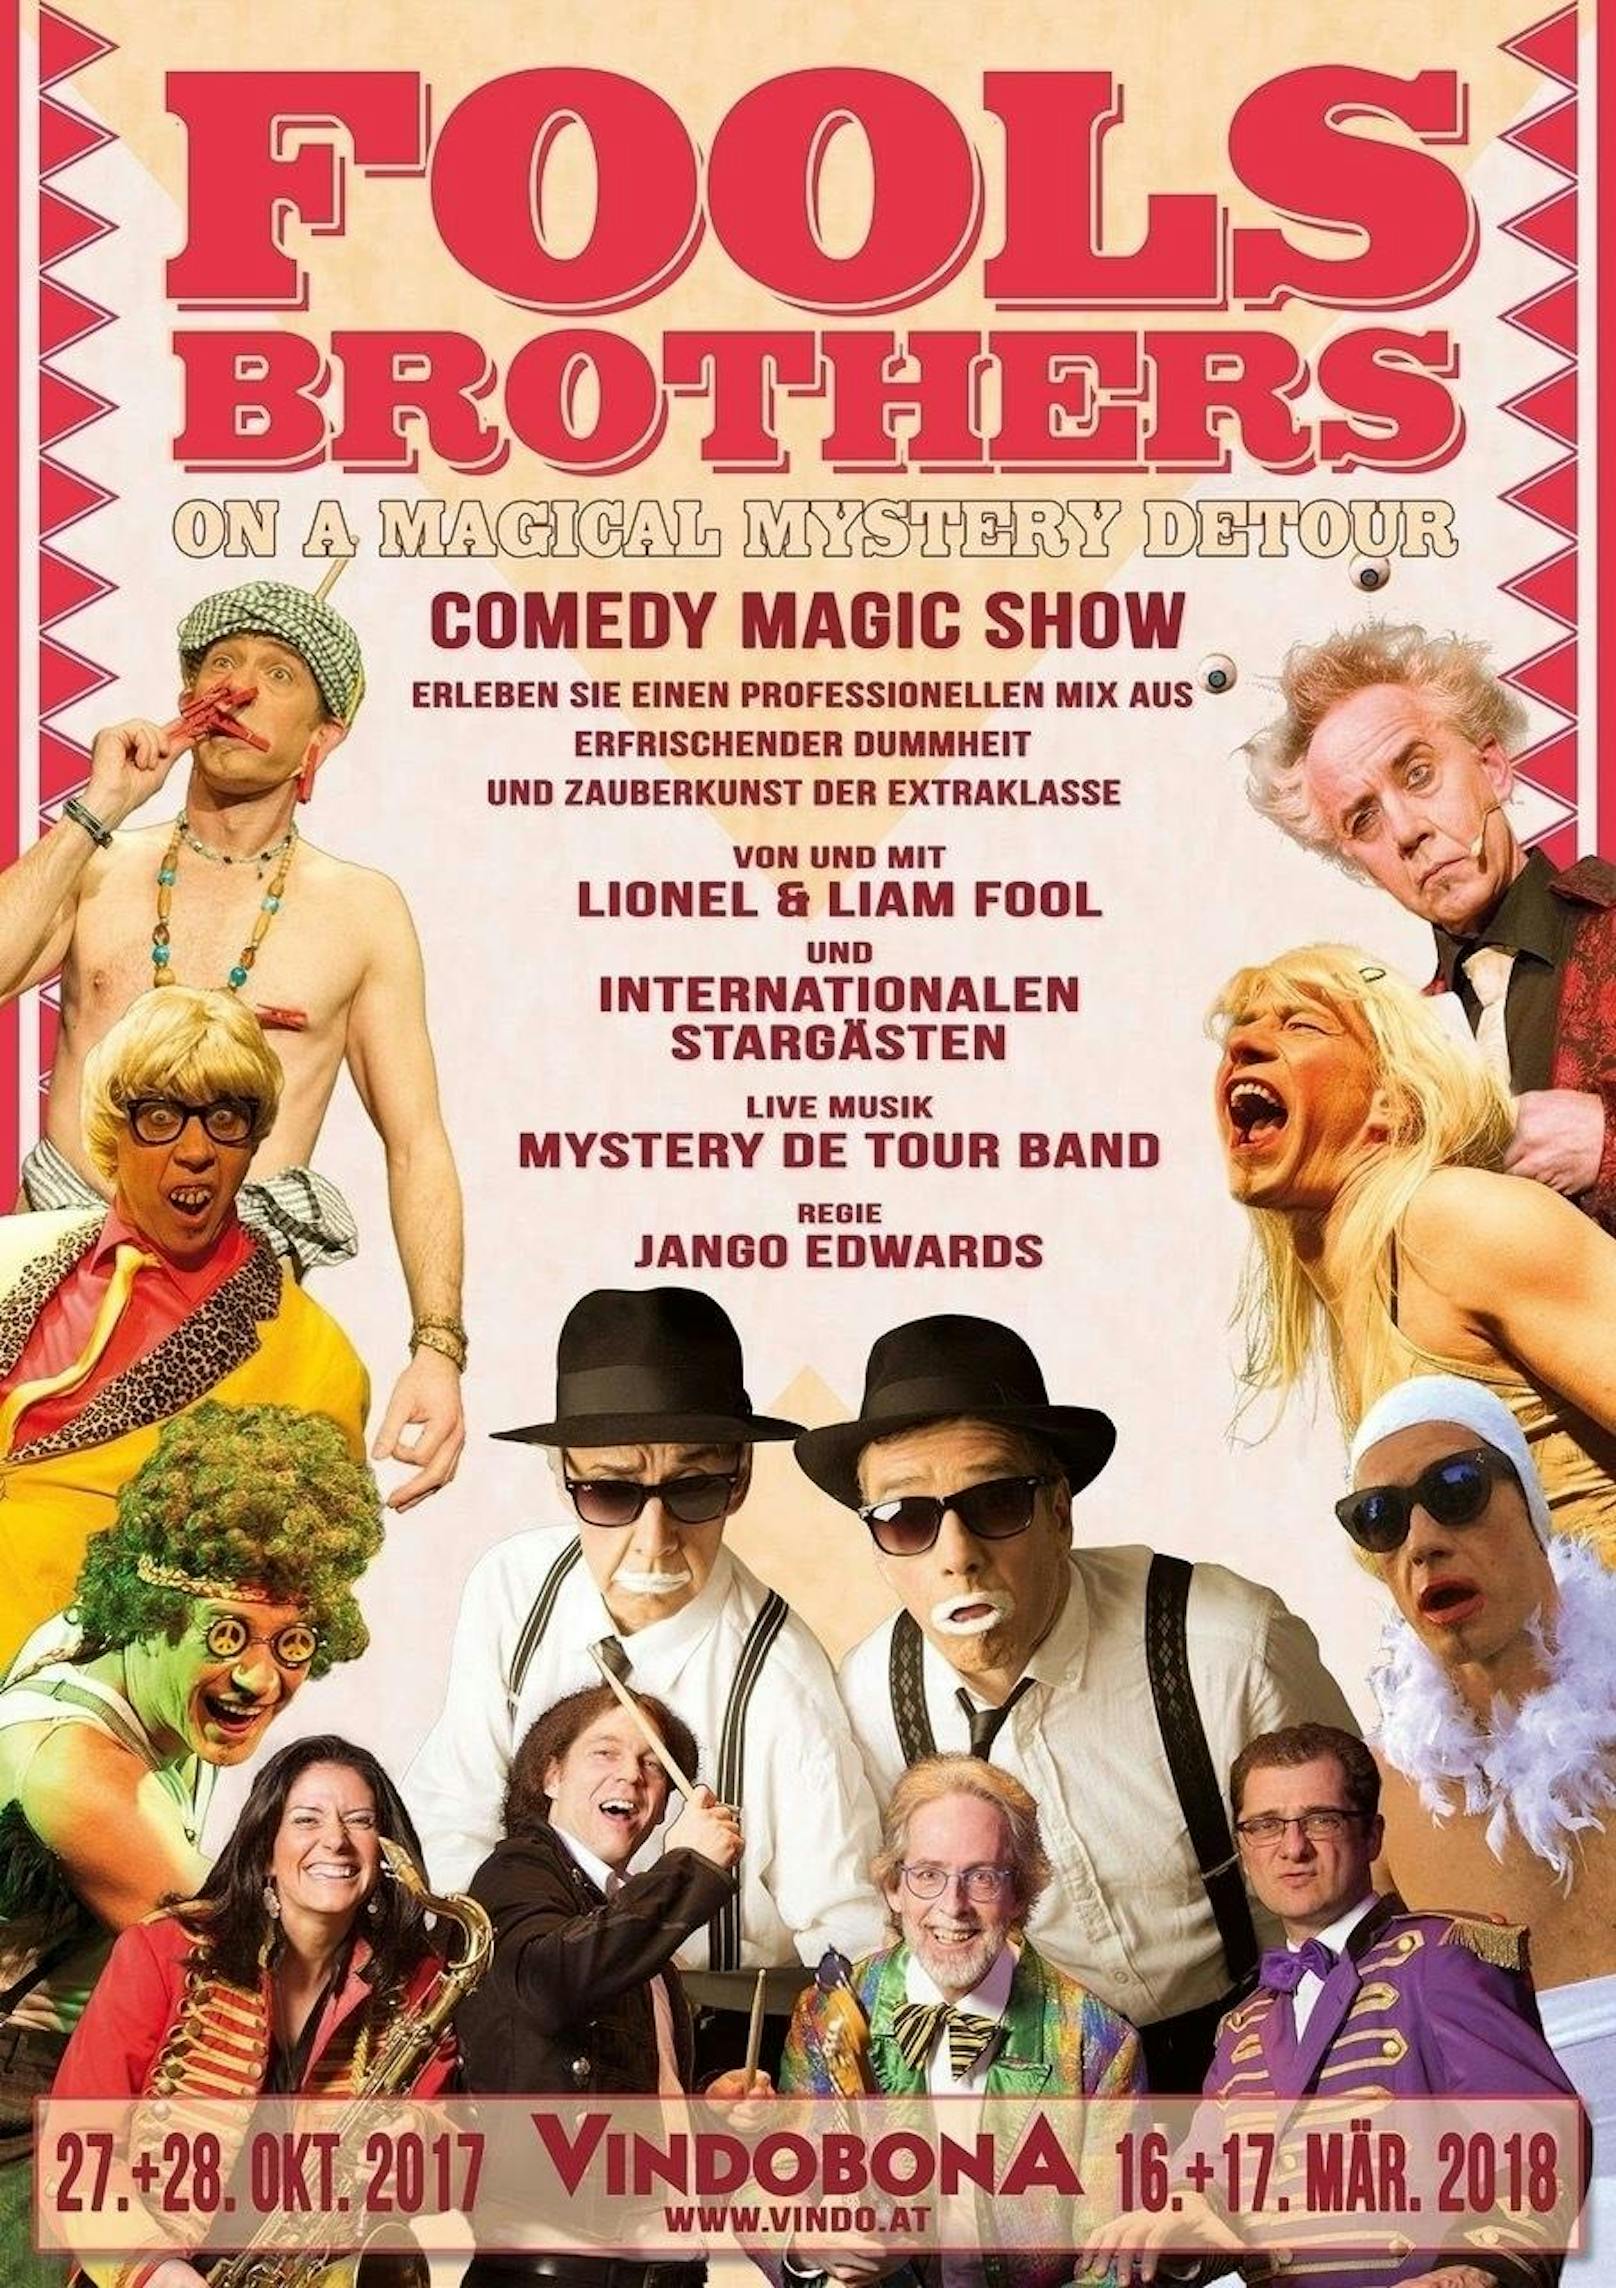 Fools Brothers treten am 27. und 28. Oktober 17 im Kabarett Vindobona auf.